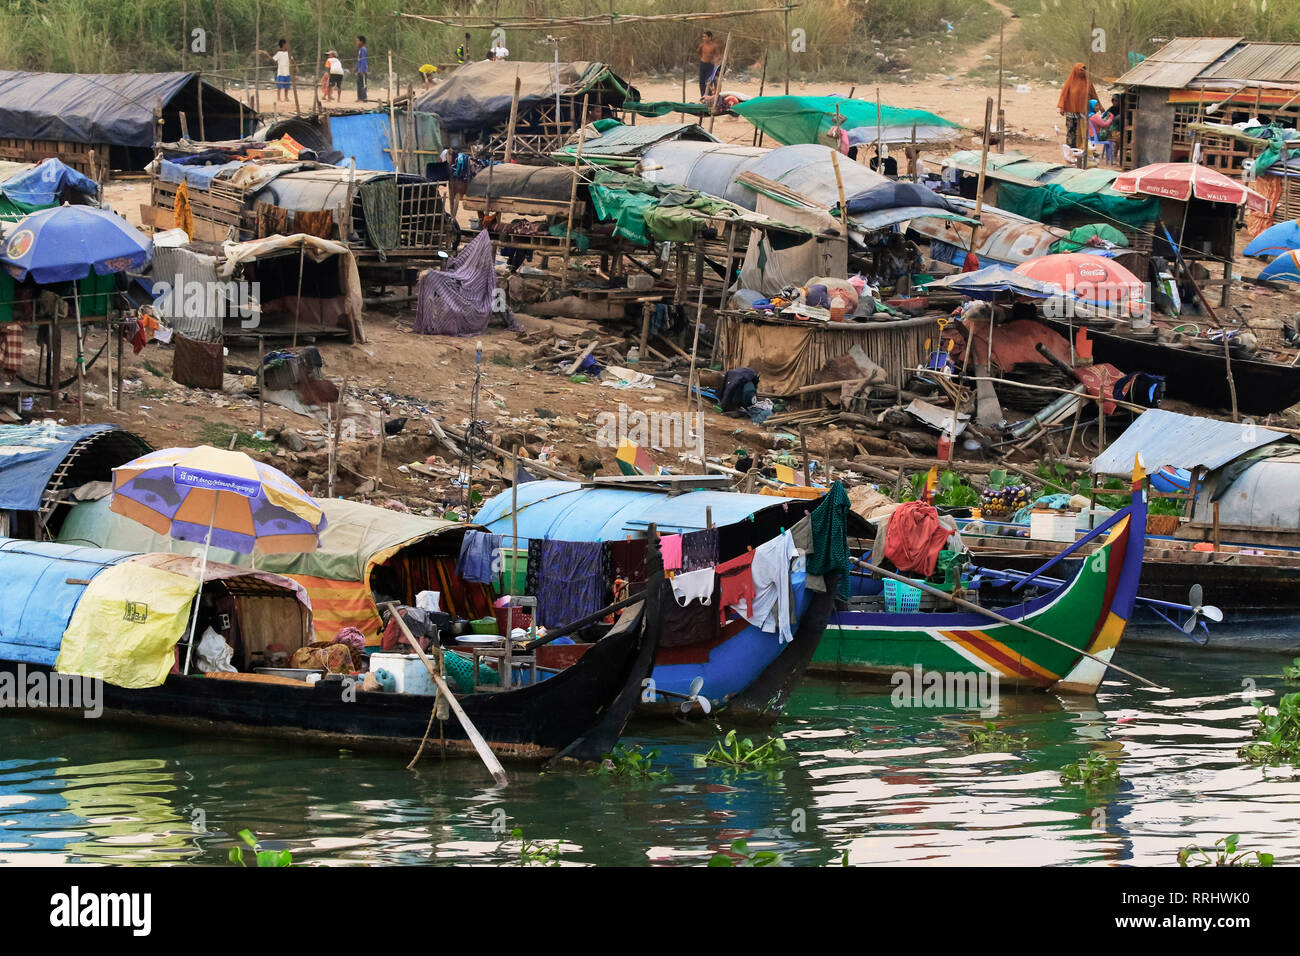 Muslimischen Cham angeln Leute, die auf ihren Booten leben, schwindende Fischbestände haben Armut verursacht, Fluss Mekong, Phnom Penh, Kambodscha, Indochina Stockfoto